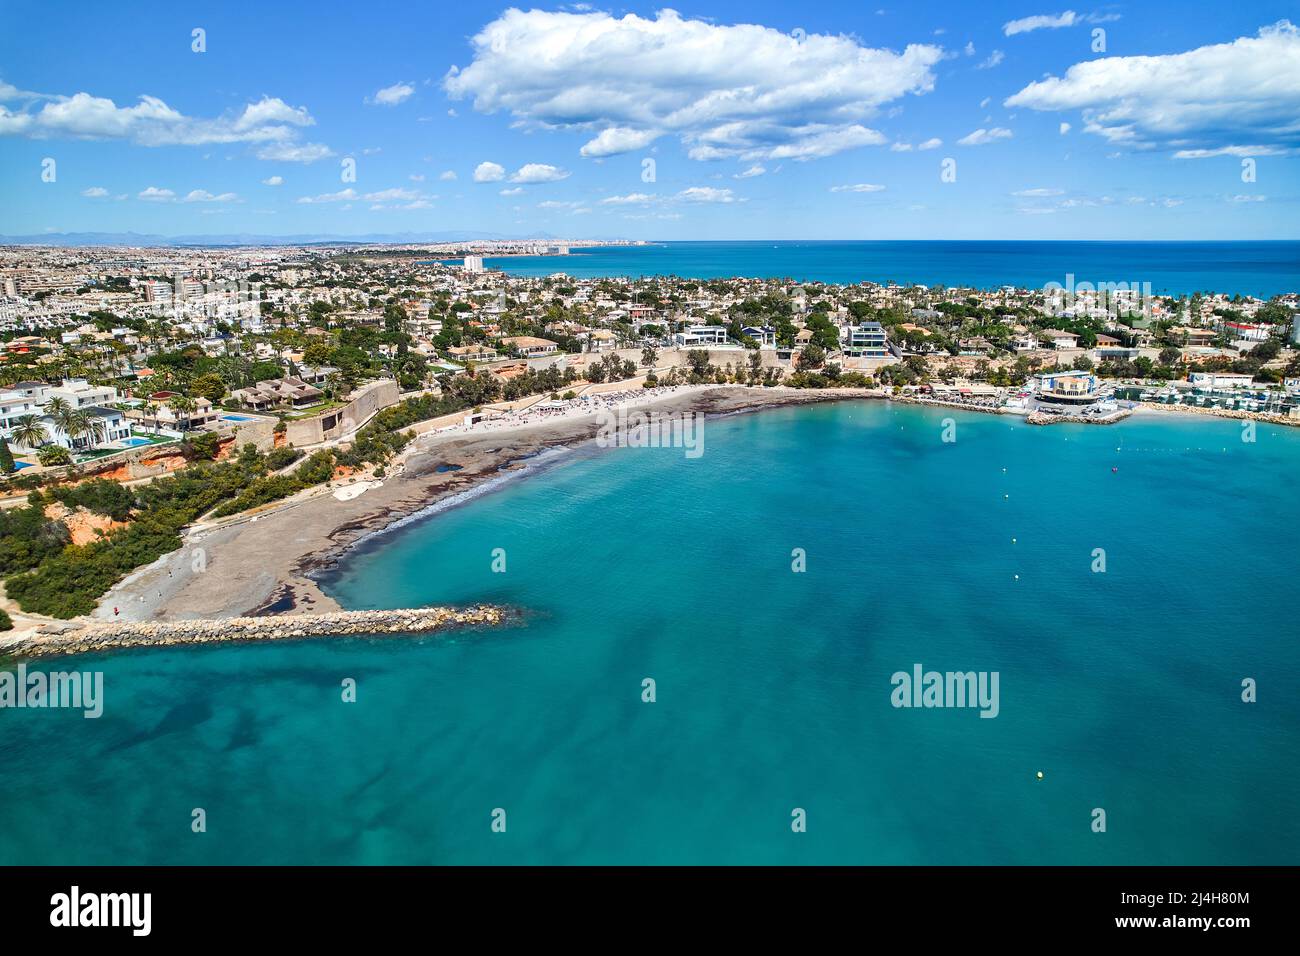 Point de vue de drones aériens Cabo Roig littoral avec bleu Méditerranée vue sur la mer, bâtiments résidentiels près de la plage de sable pendant la journée ensoleillée d'été. Banque D'Images